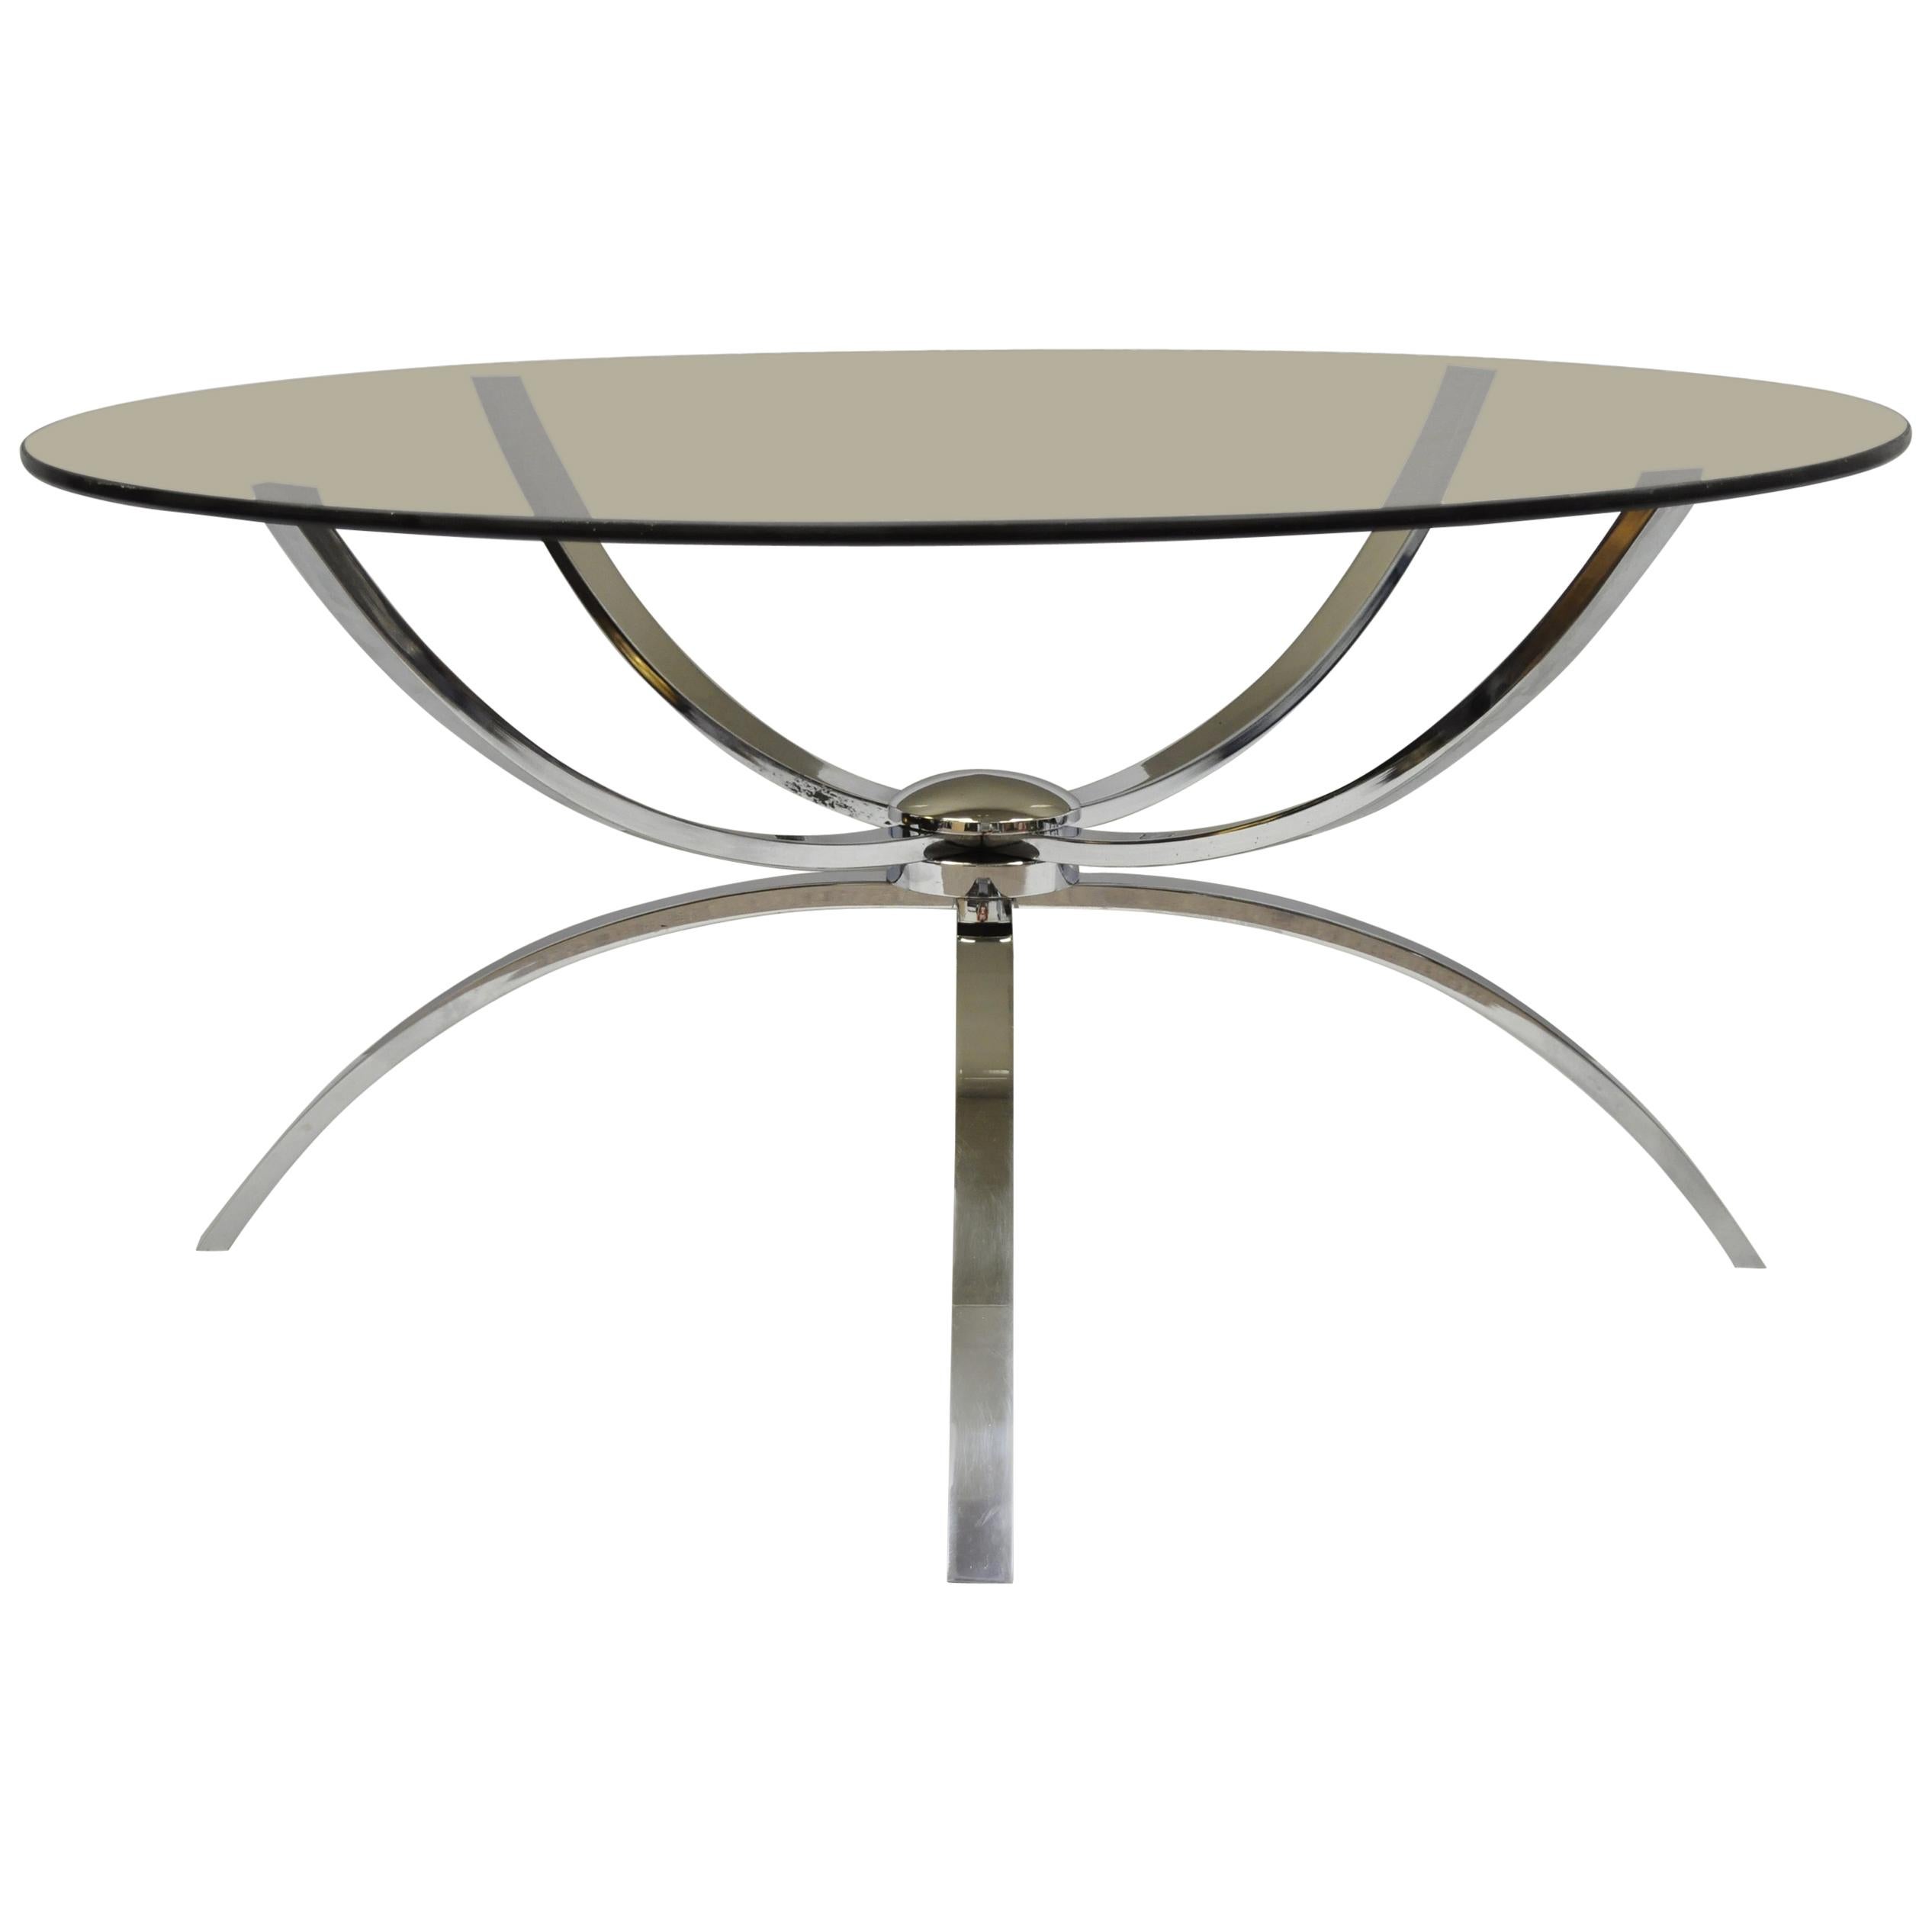 Table basse ronde à base araignée en acier chromé et plateau en verre, de style italien moderne du milieu du siècle dernier